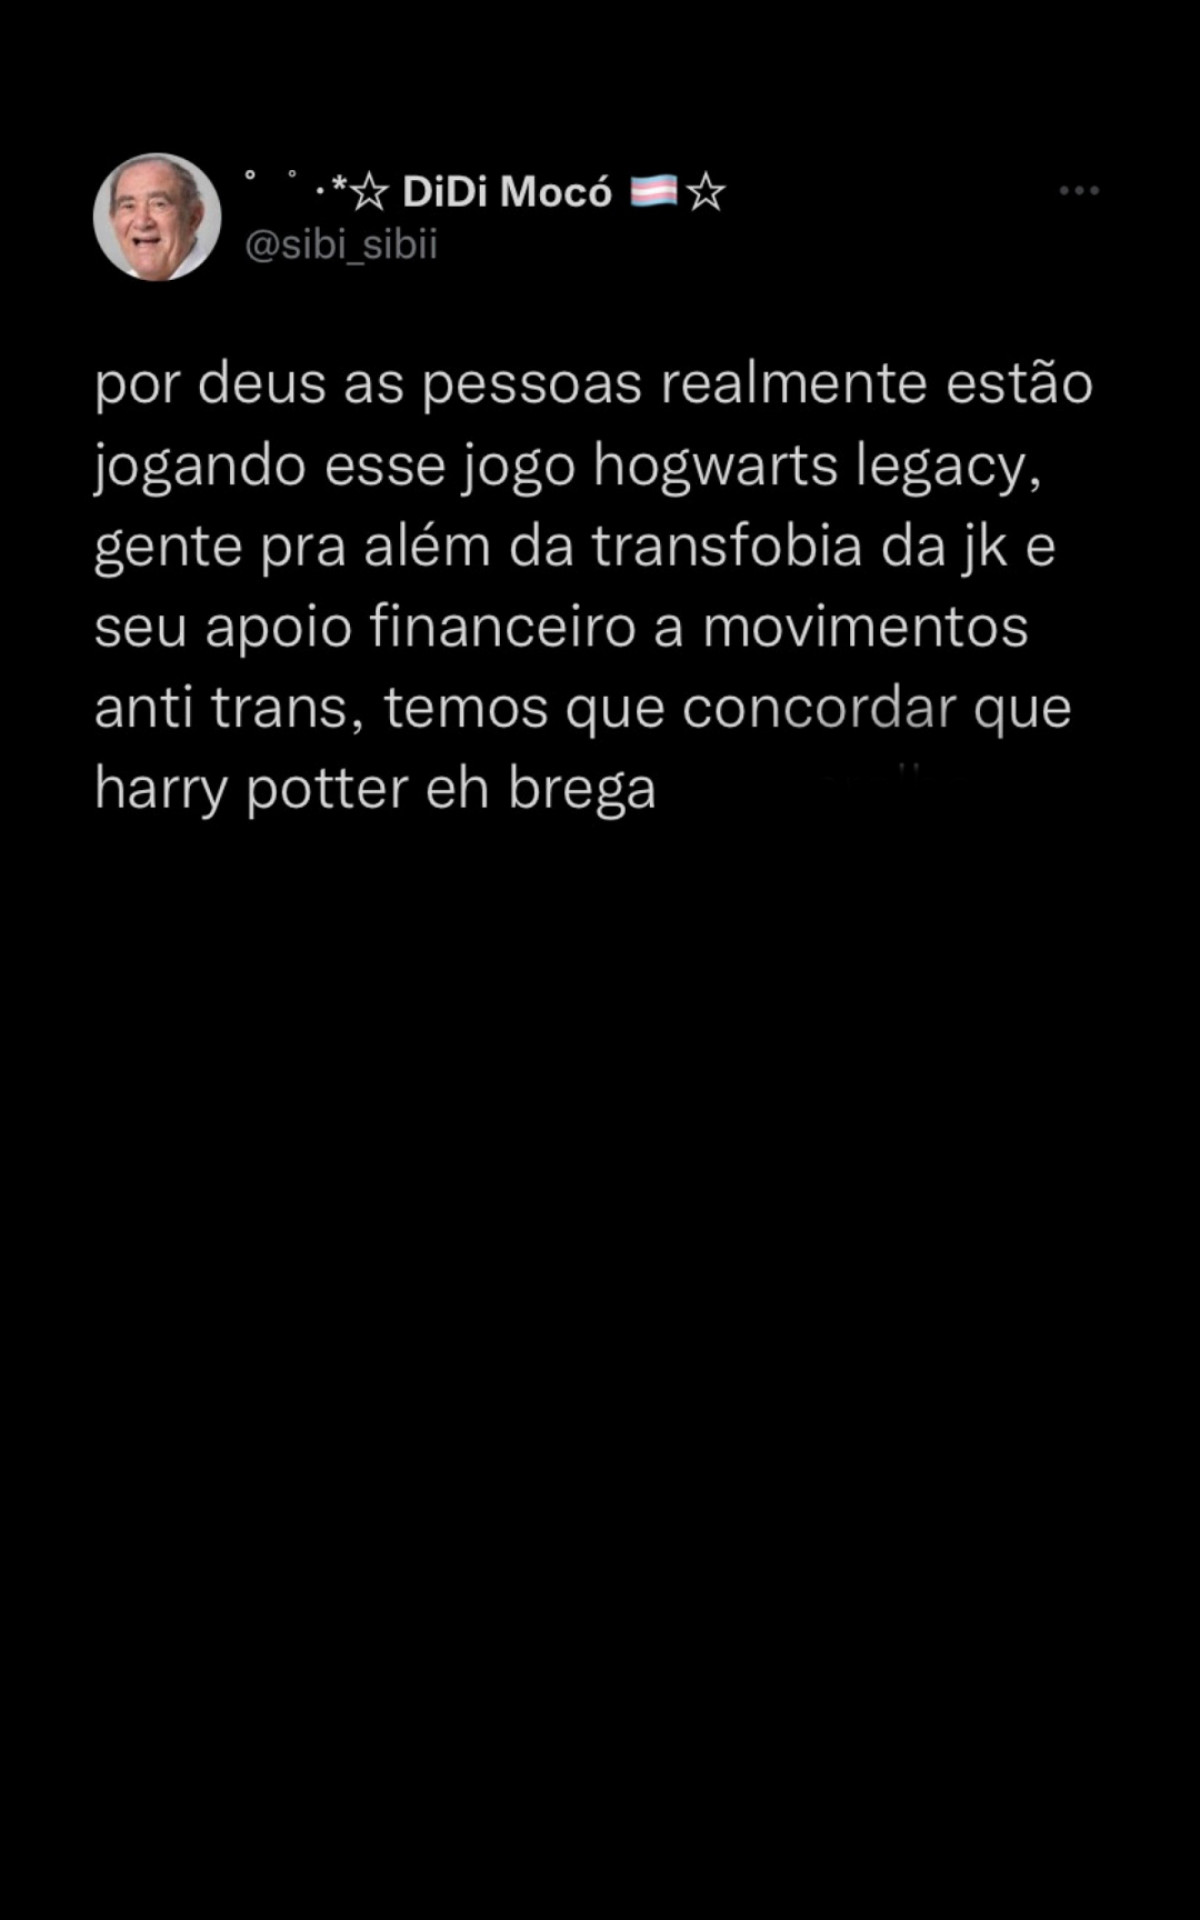 Harry Potter x JK Rowling: Não participar do boicote a Hogwarts